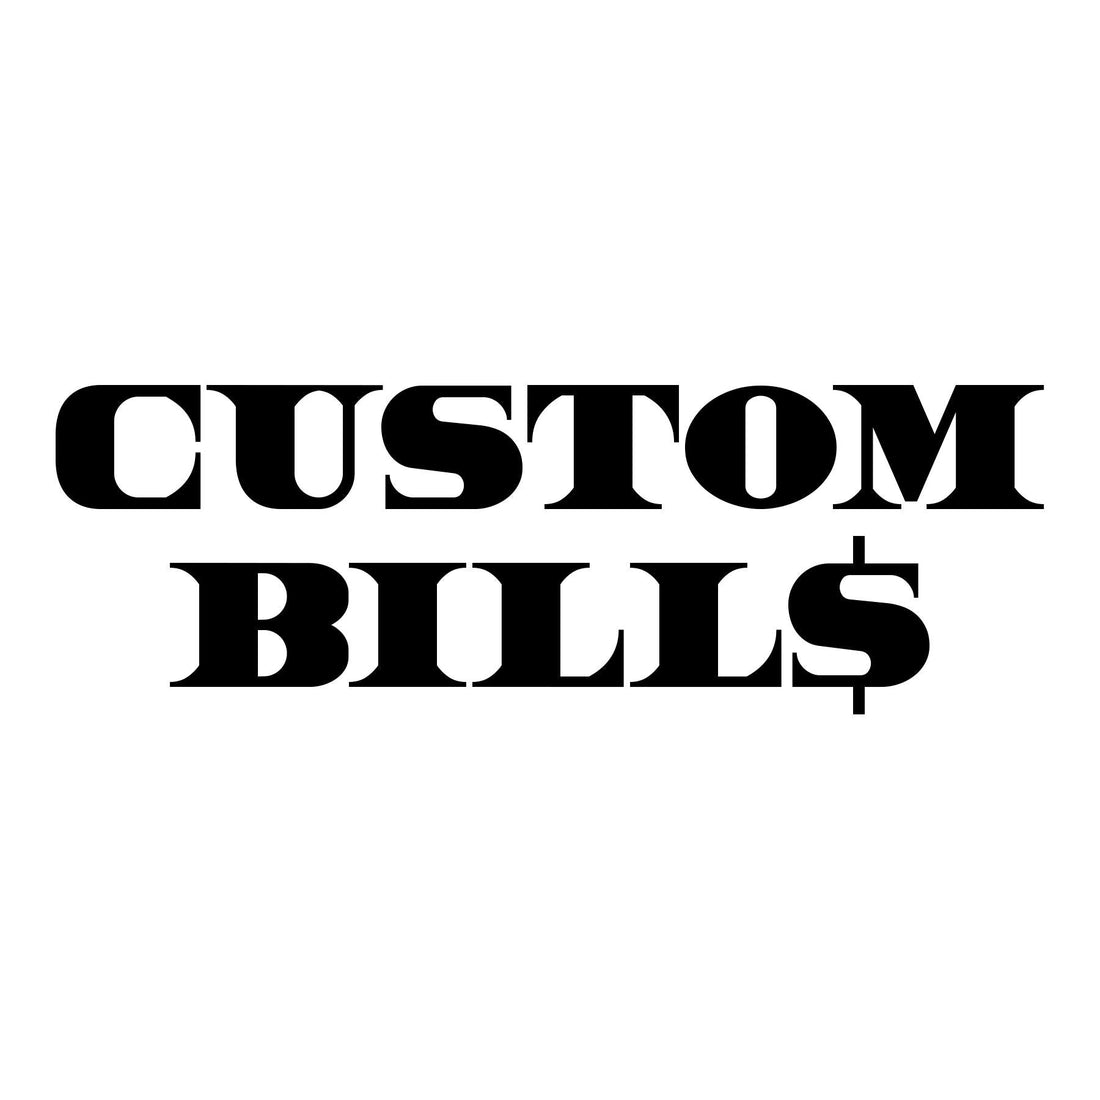 Personalized Prop Money - CustomBills.com - Custom Bills